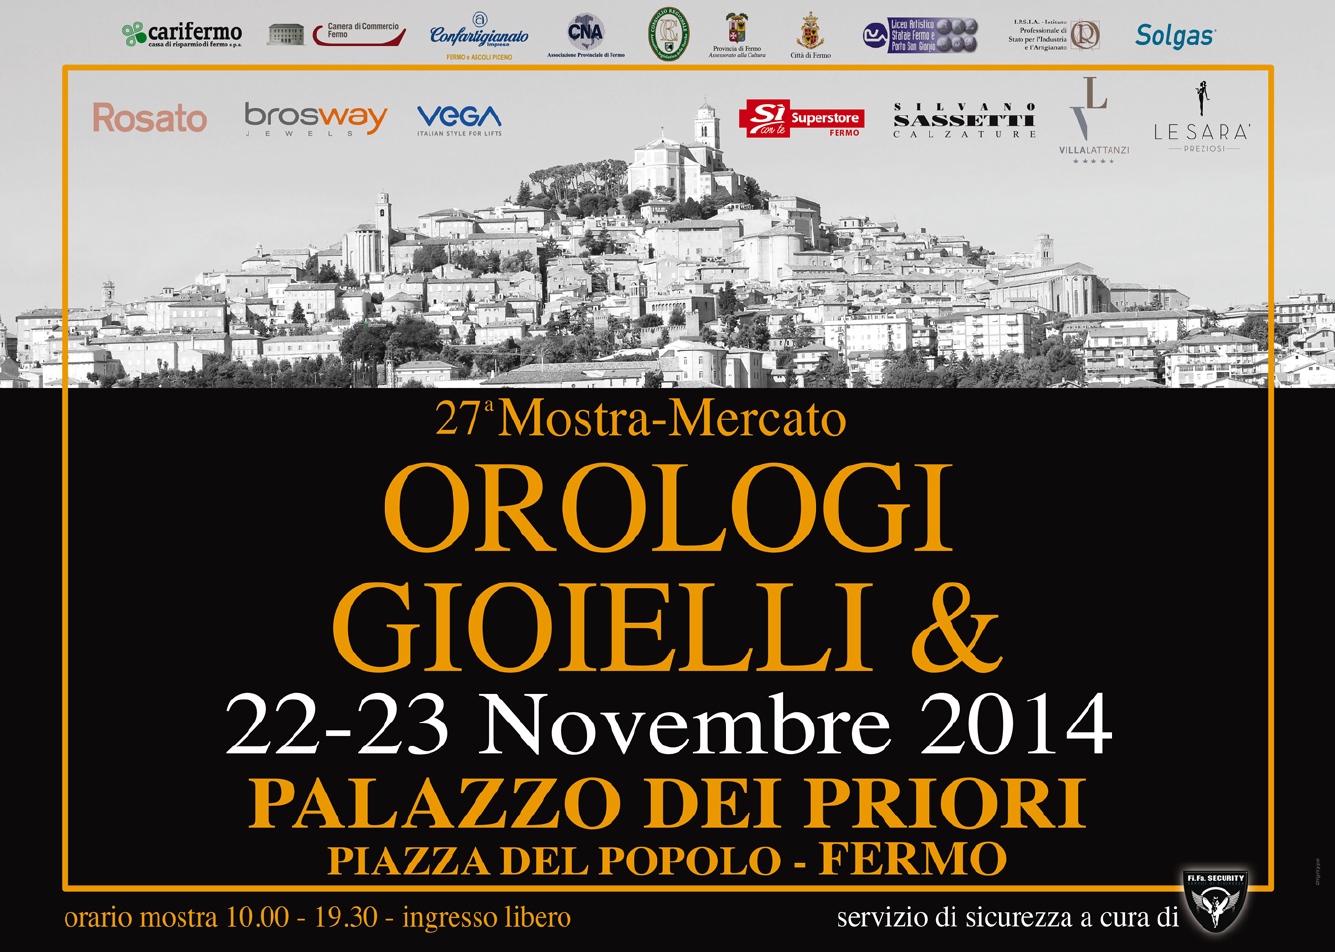 Immagine Orologi-Gioielli 2014